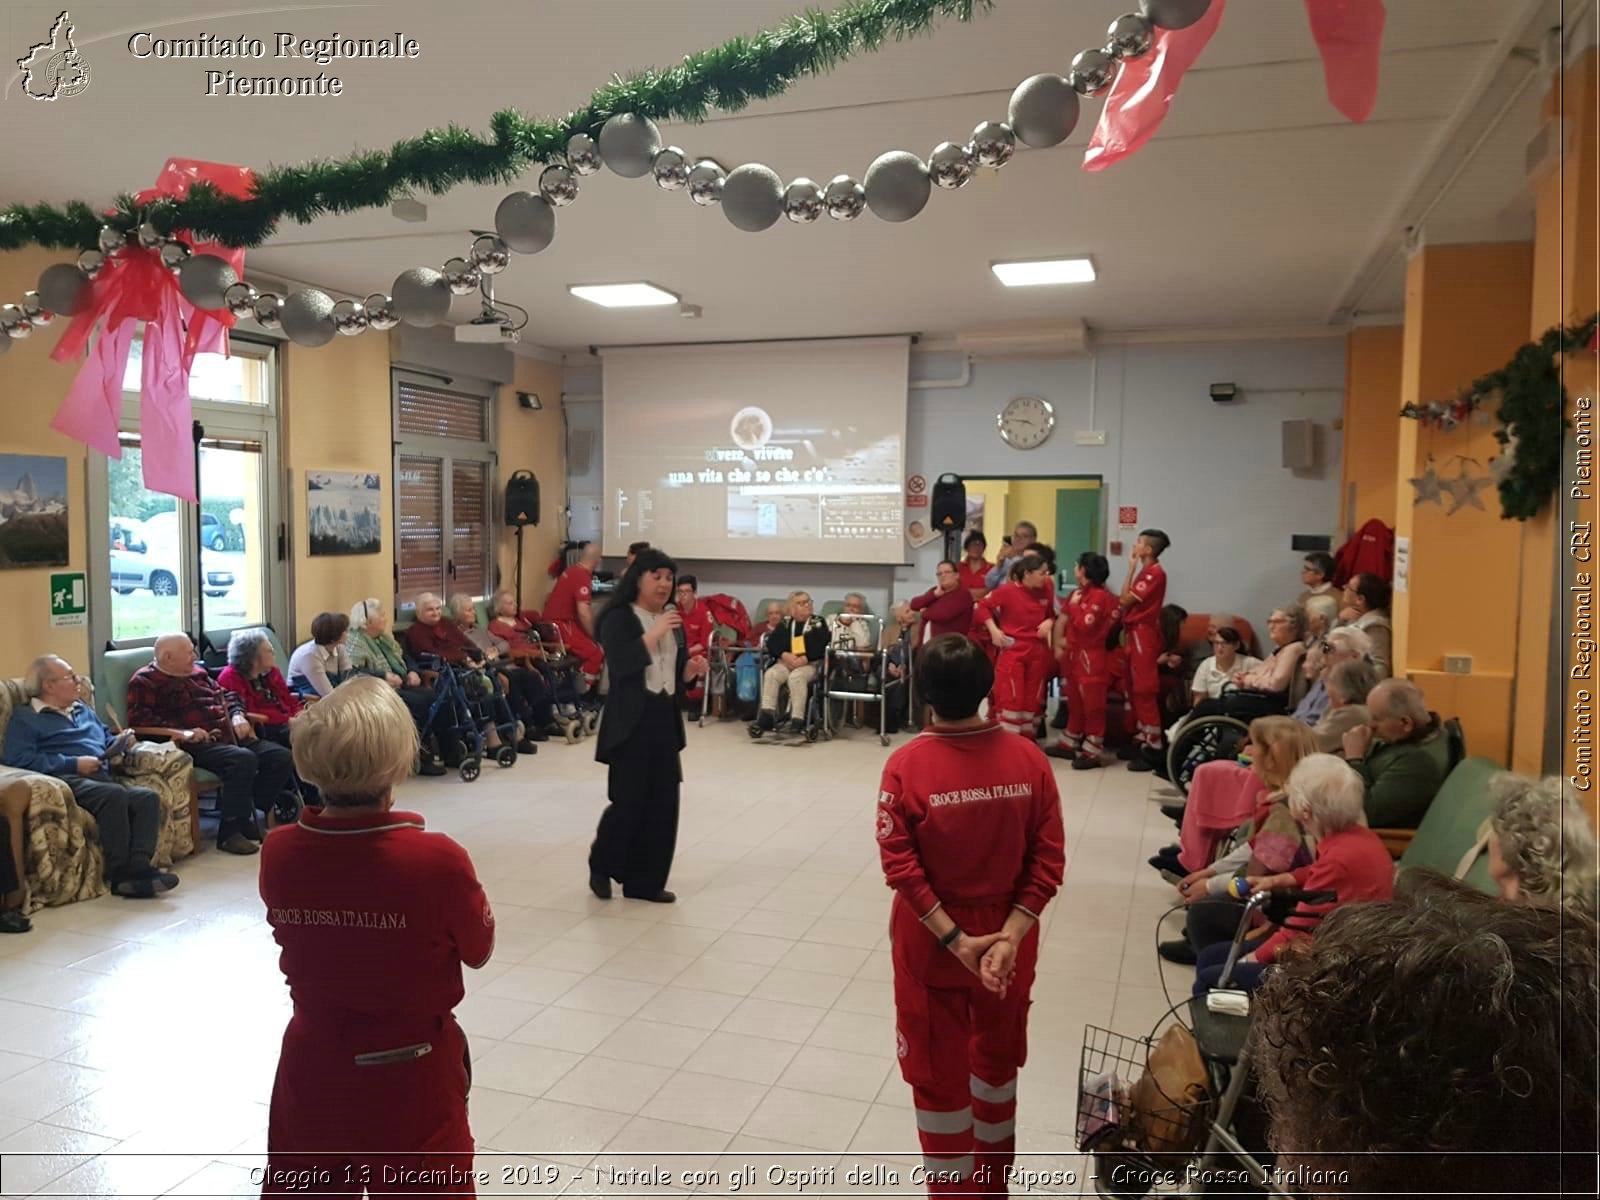 Oleggio 13 Dicembre 2019 - Natale con gli Ospiti dell Casa di Riposo - Croce Rossa Italiana